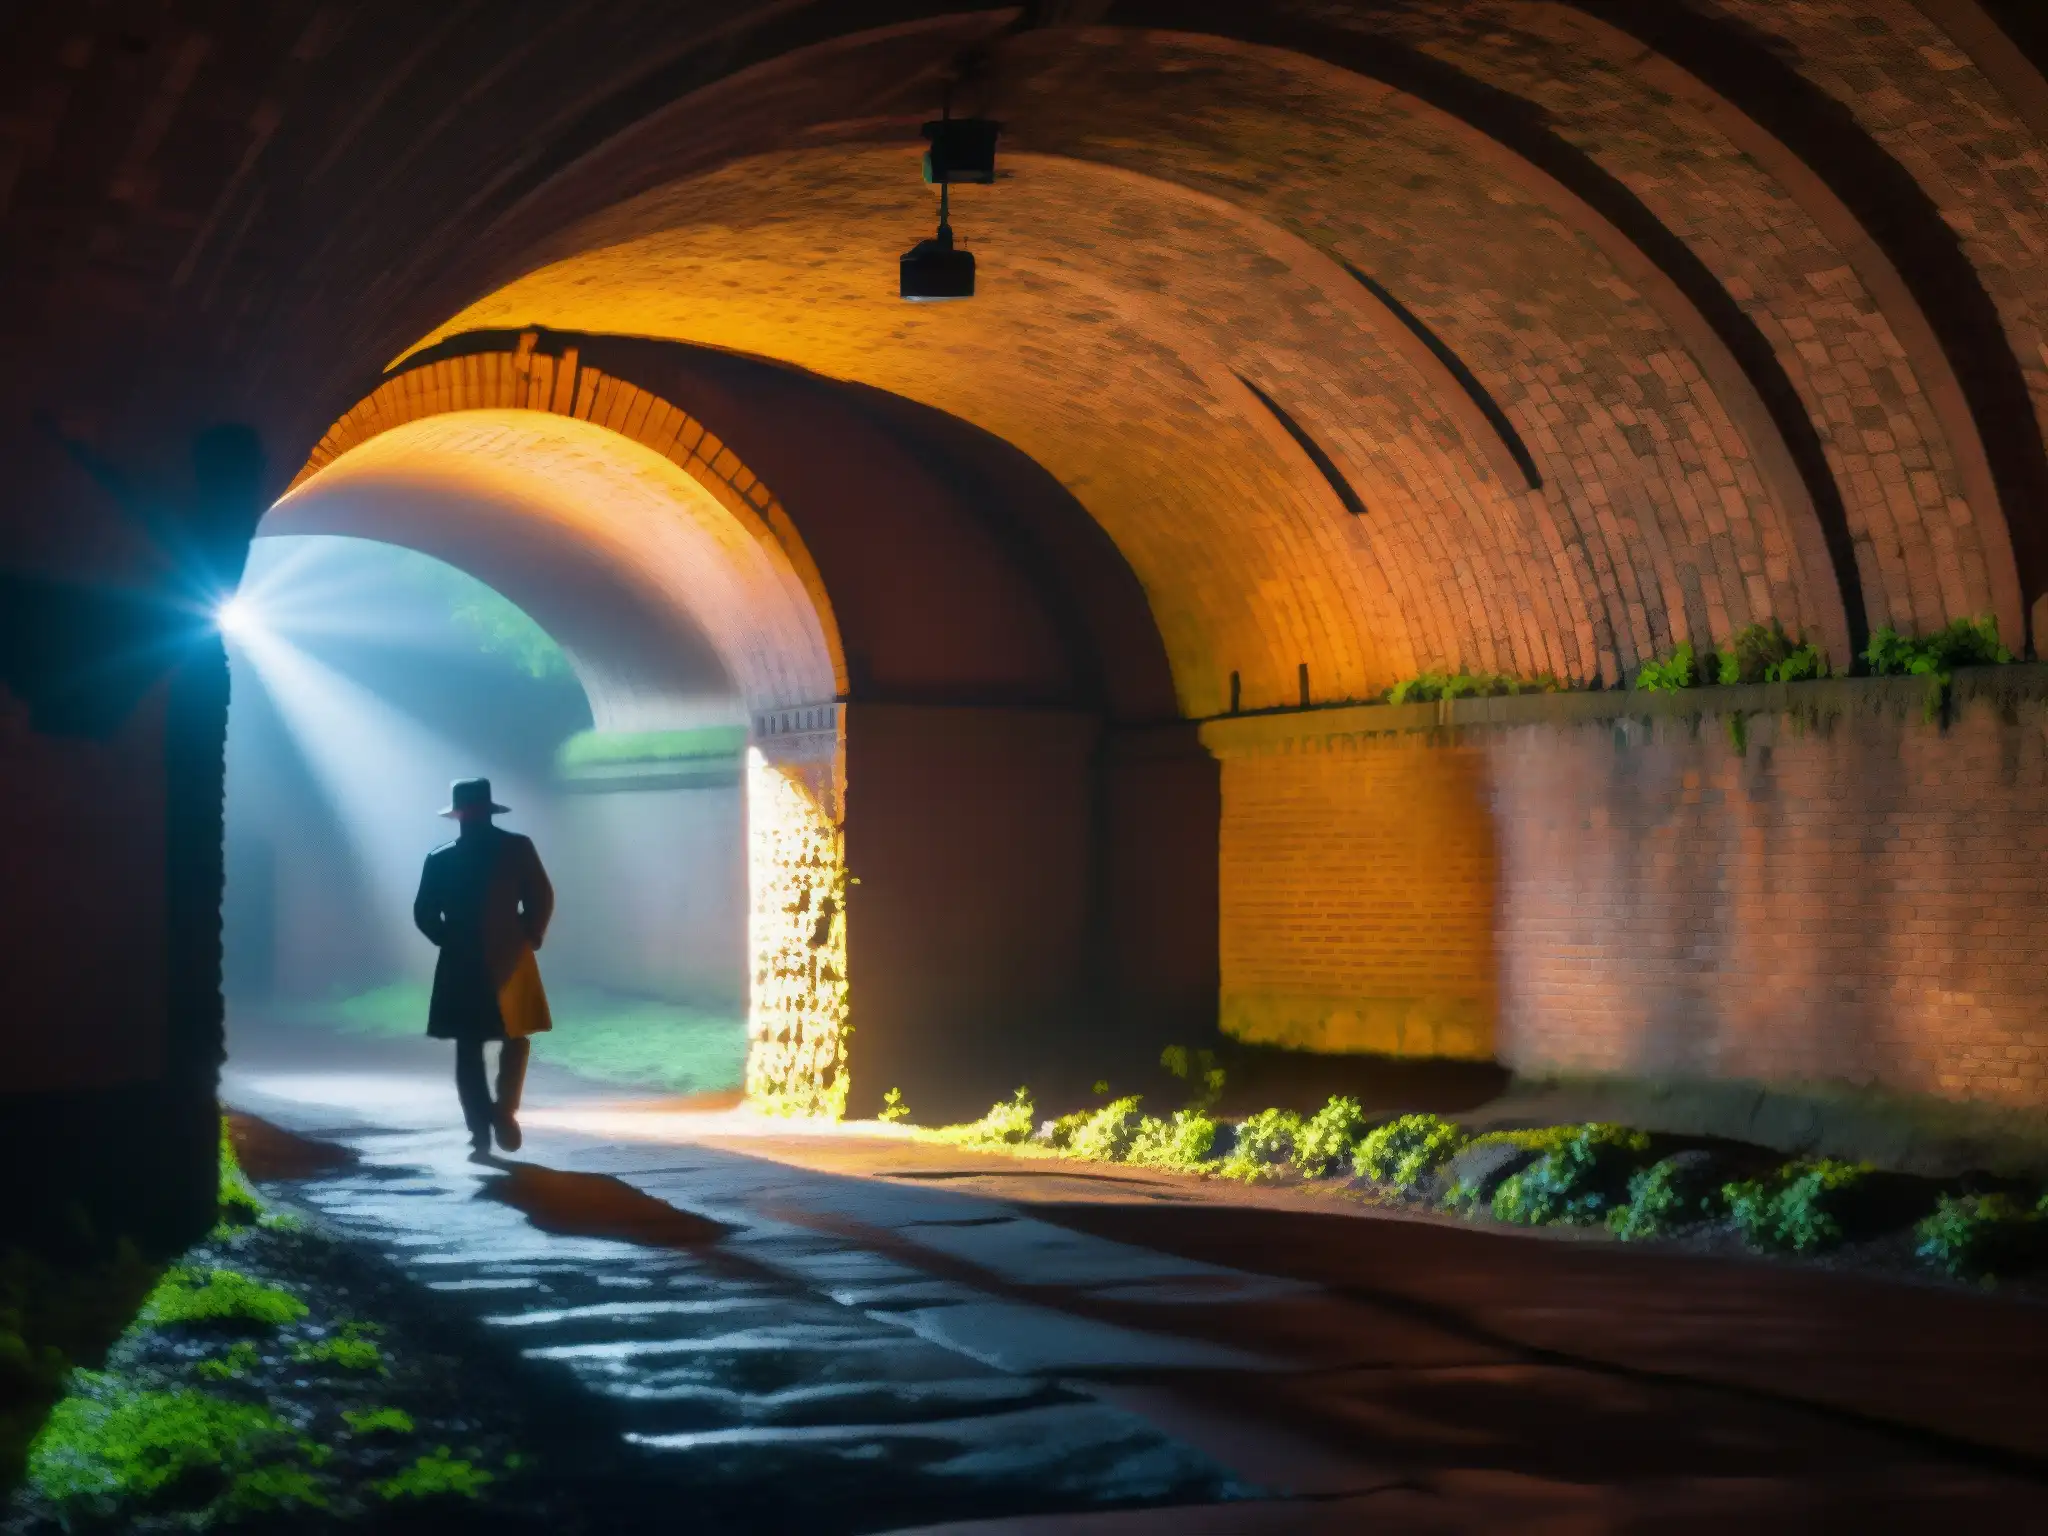 Explorando la historia oculta de los túneles en Portland, Oregon, con intrincada arquitectura de ladrillo y una atmósfera misteriosa